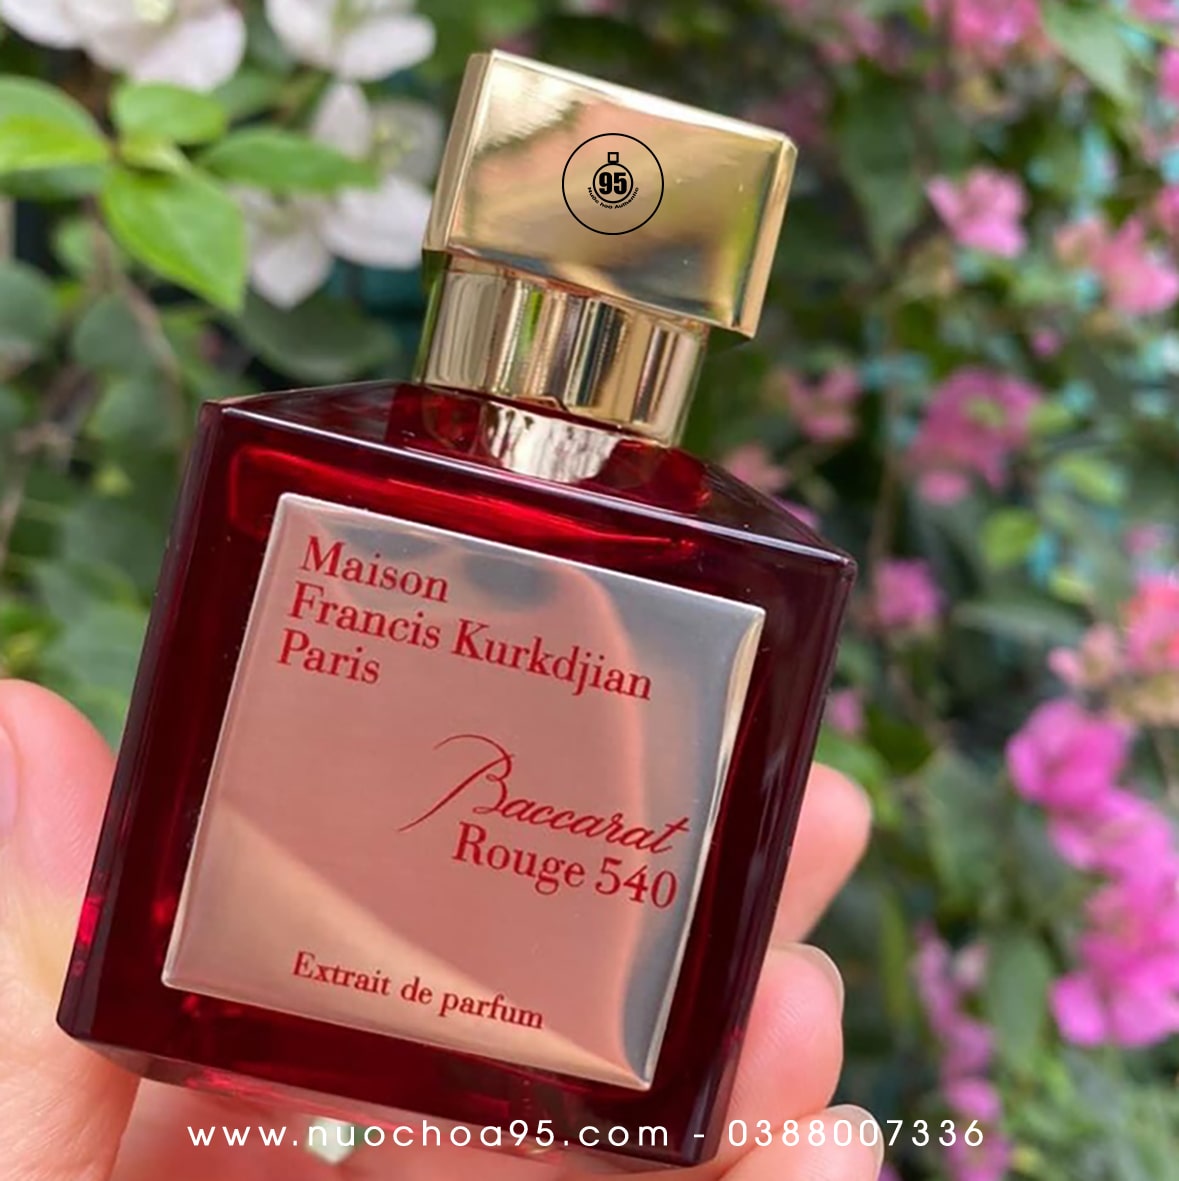 Nước hoa nữ lưu hương lâu MFK Baccarat Rouge 540 Extrait de Parfum